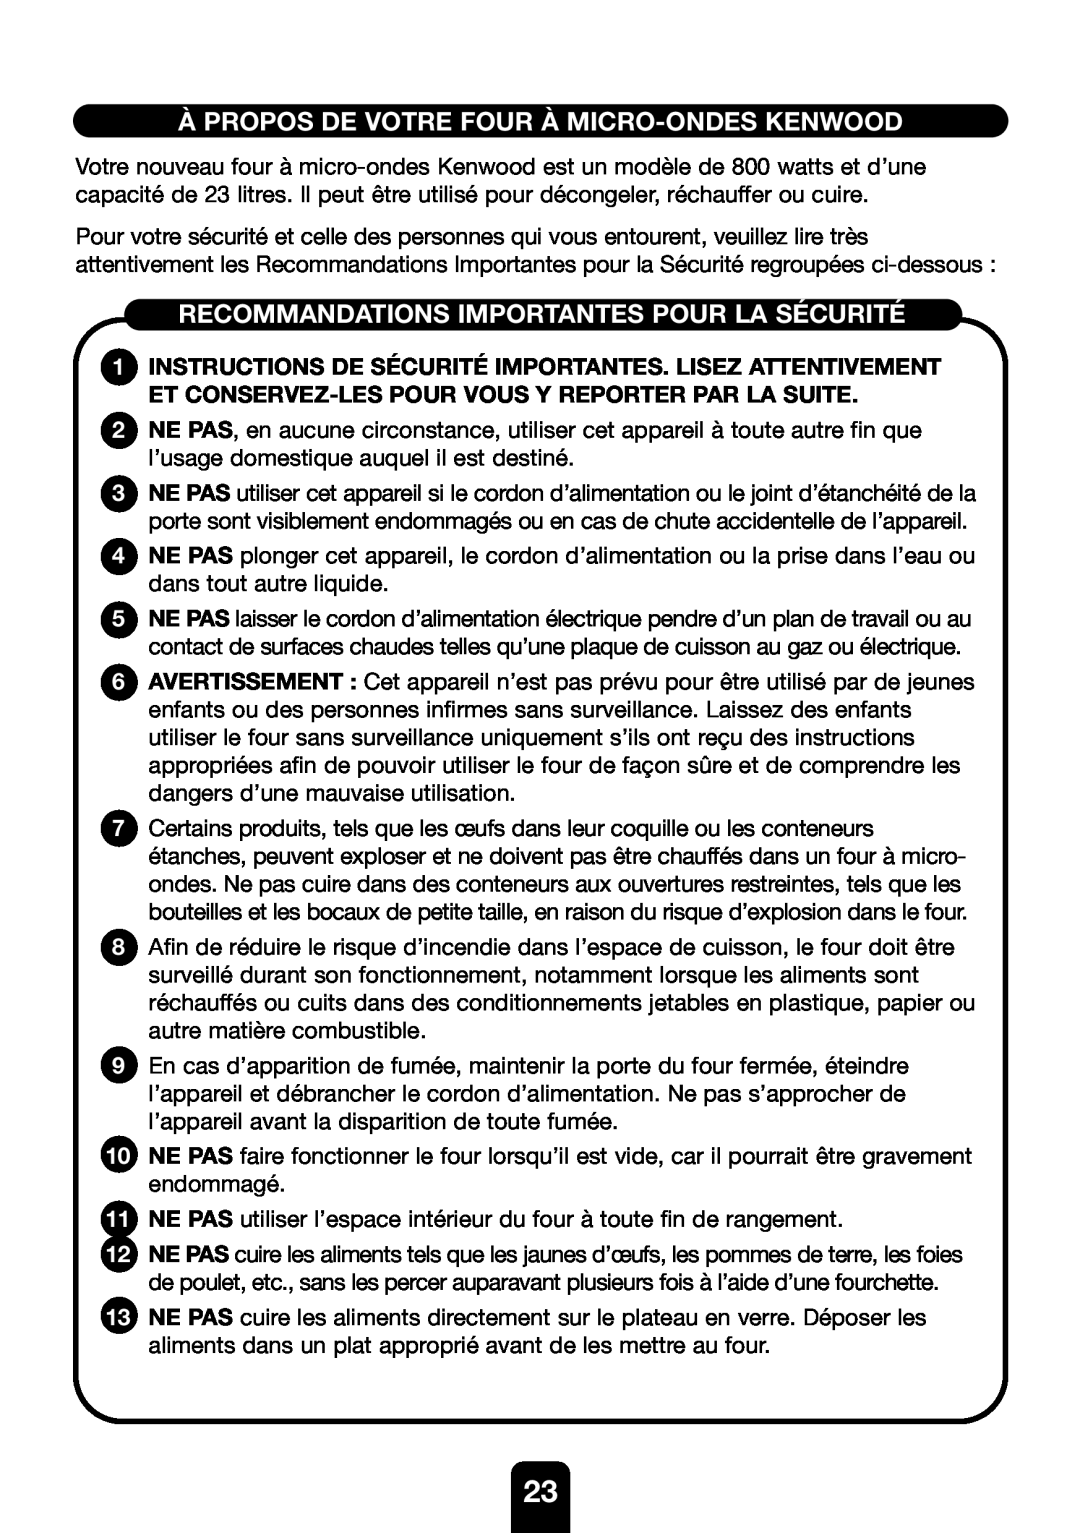 Kenwood MW761E manual À Propos De Votre Four À Micro-Ondes Kenwood, Recommandations Importantes Pour La Sécurité 